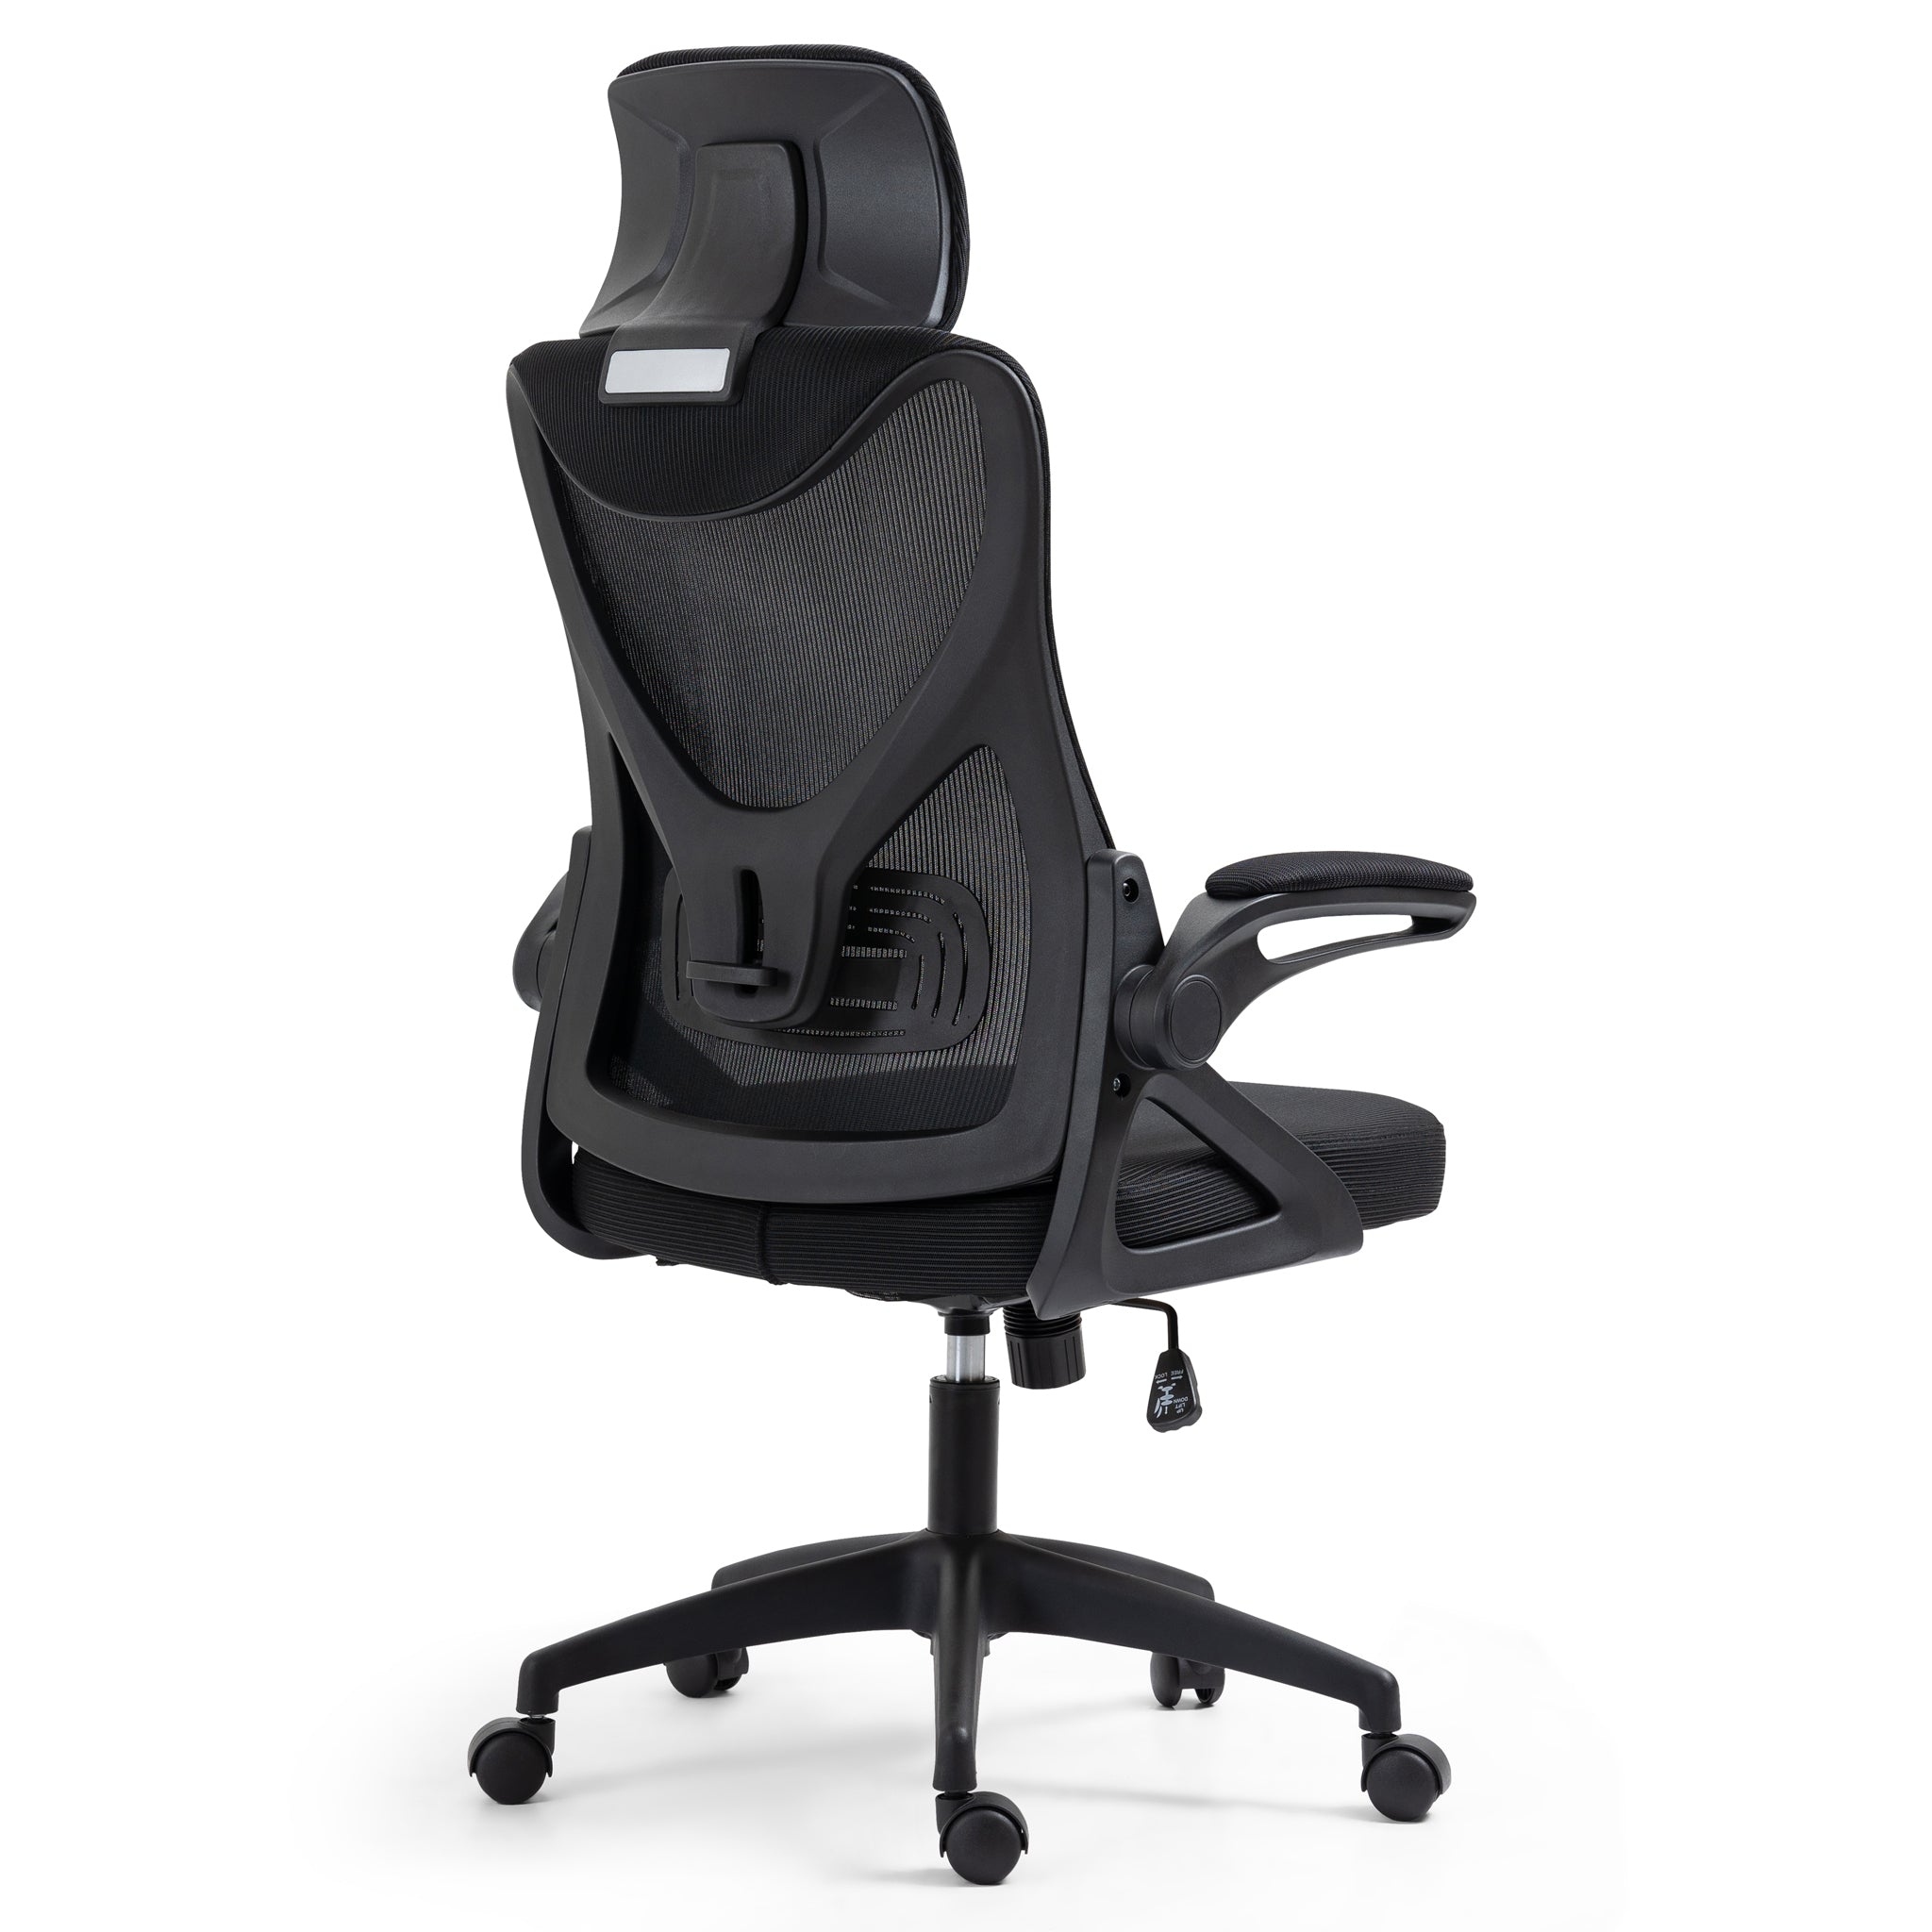 Ergonomic Essentials Black Adjustable Office Gaming Chair-5056536118820-Bargainia.com